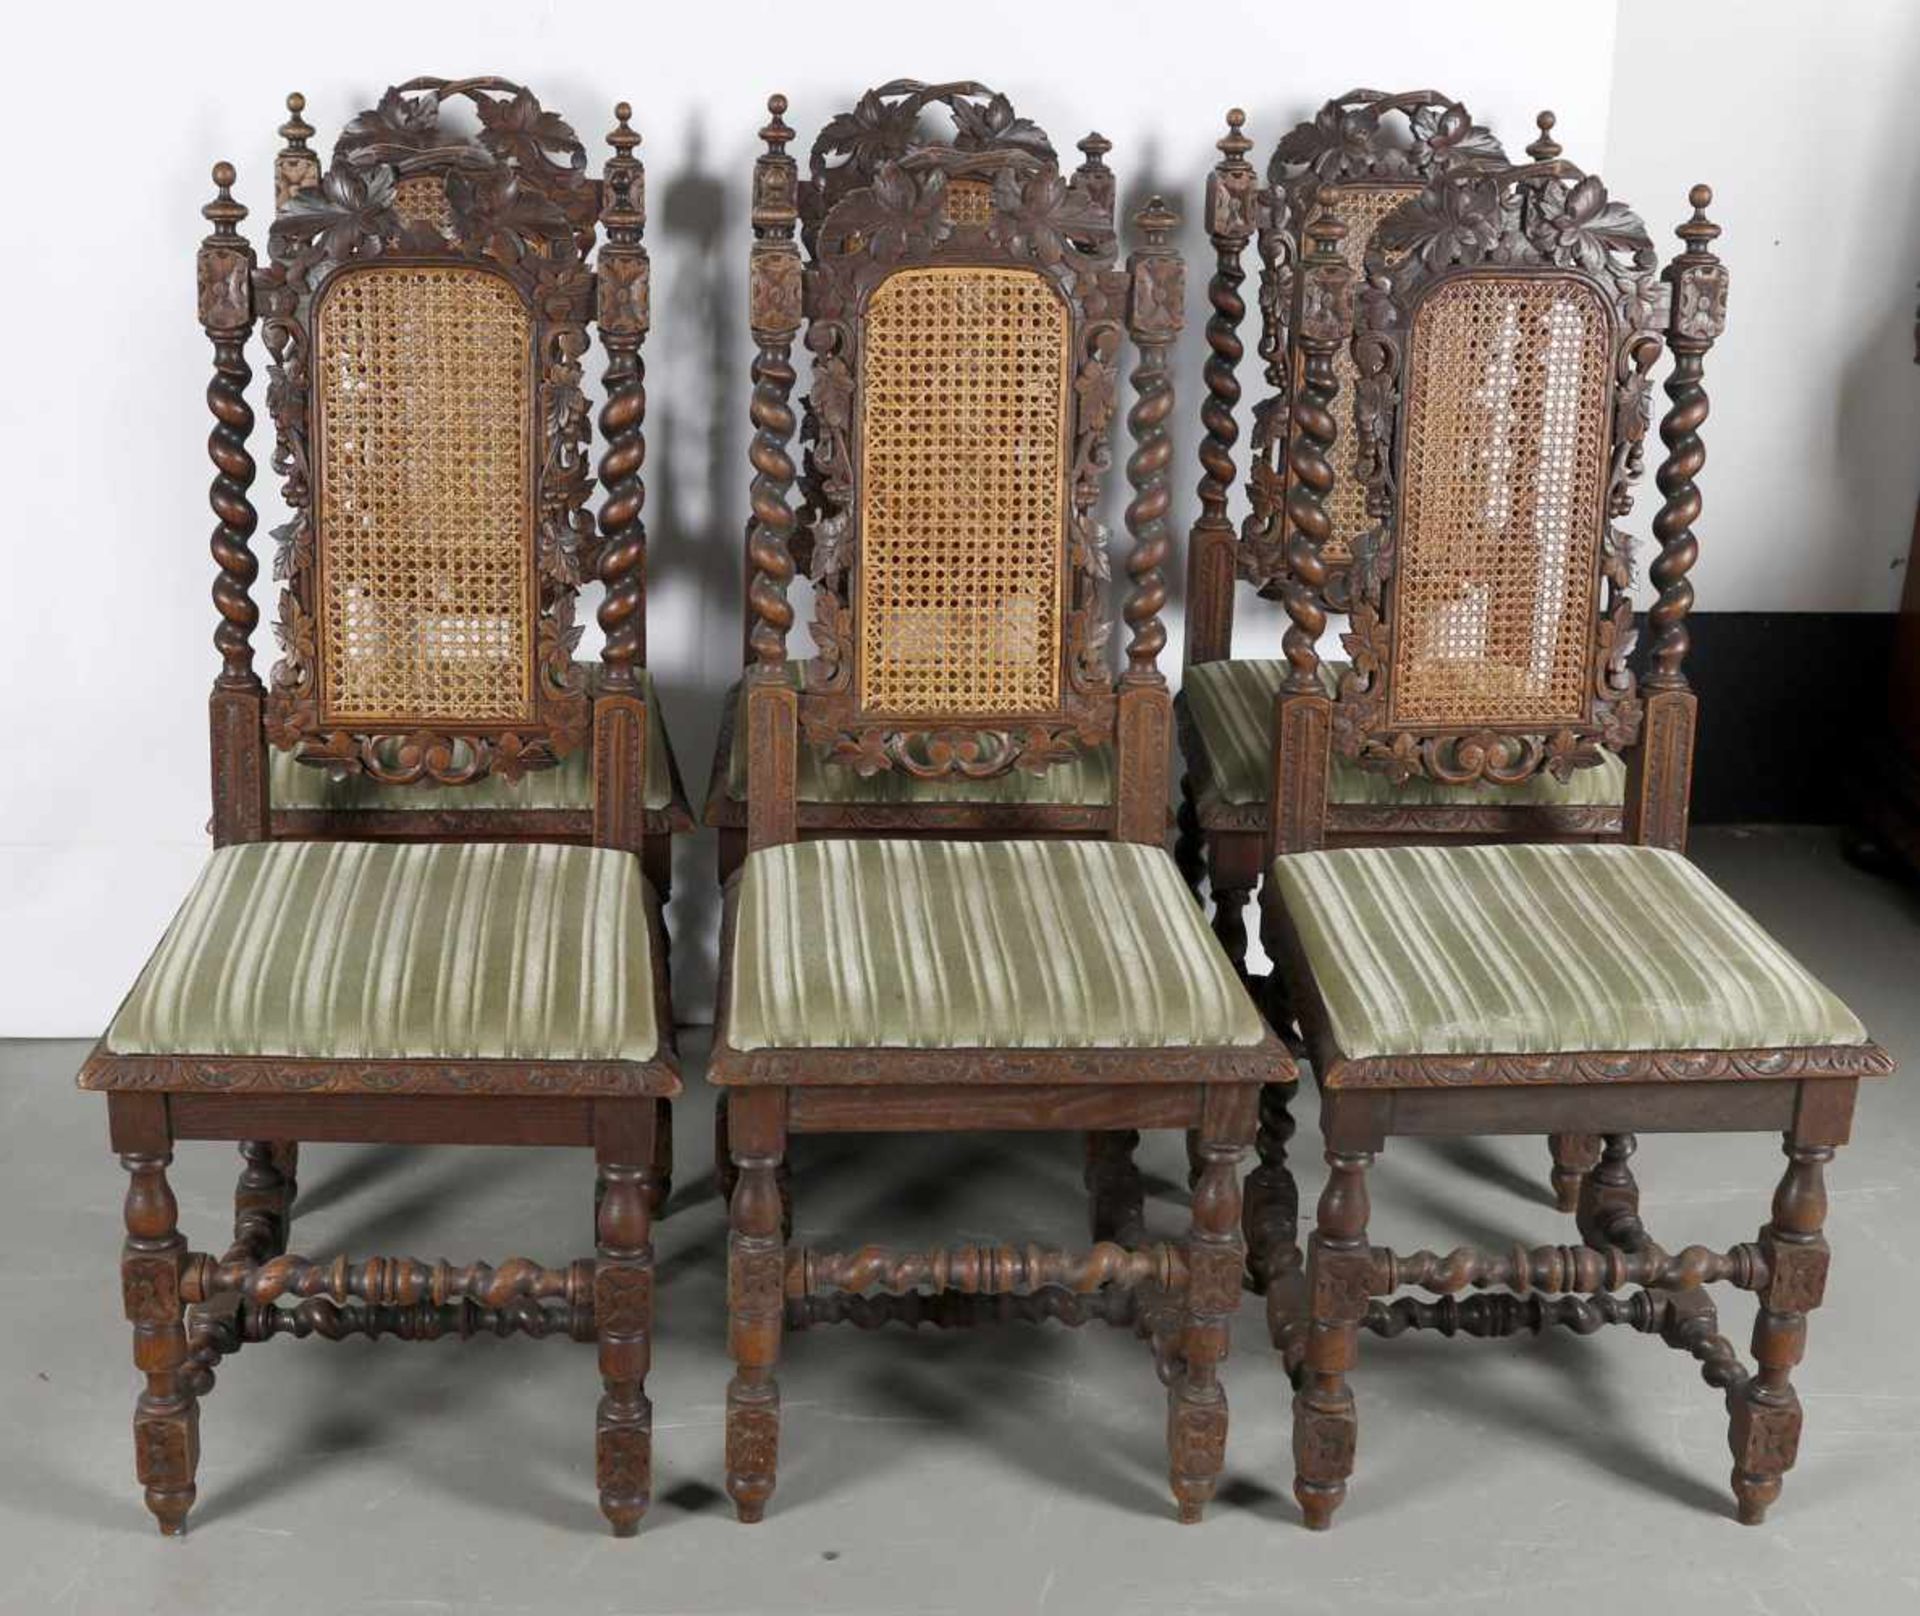 Sechs dekorative Stühle, Frankreich um 1860-80Eichenholz, reich beschnitzt, Traubendekor mit